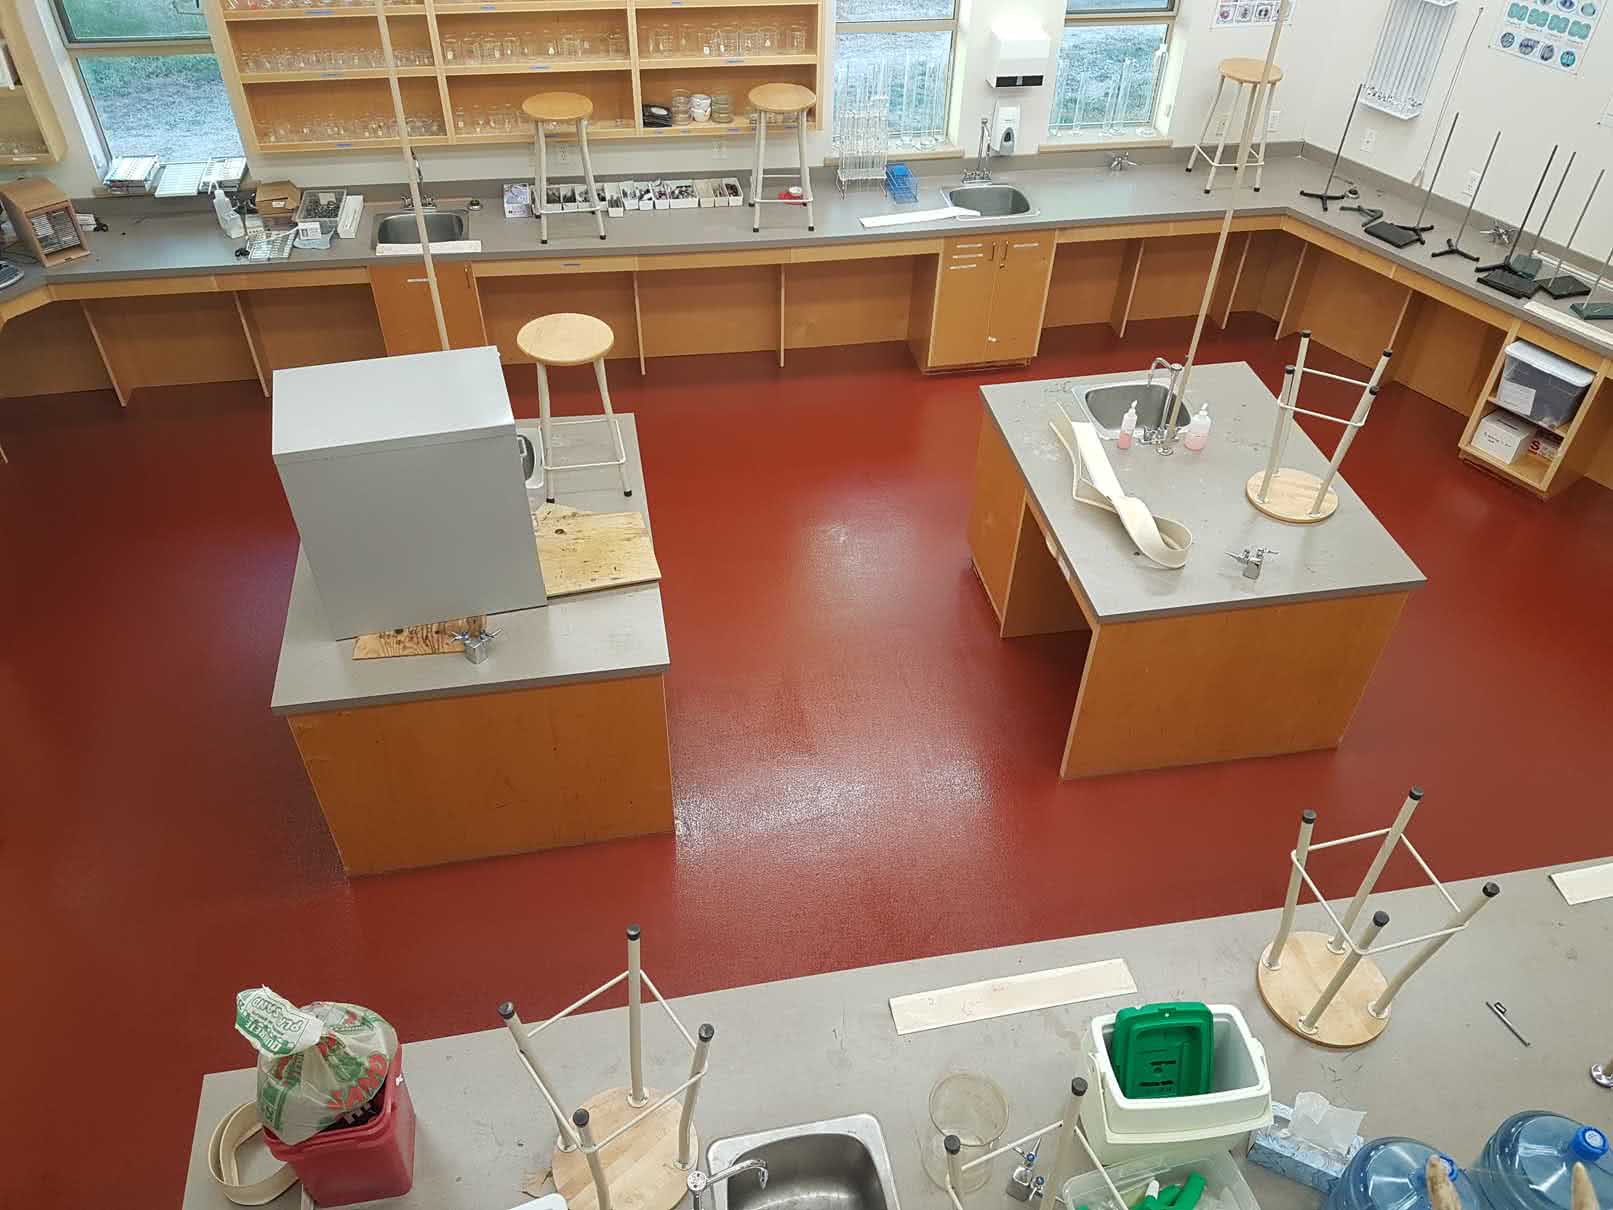 Coloured epoxy floor coating at Shawnigan Lake Elementary